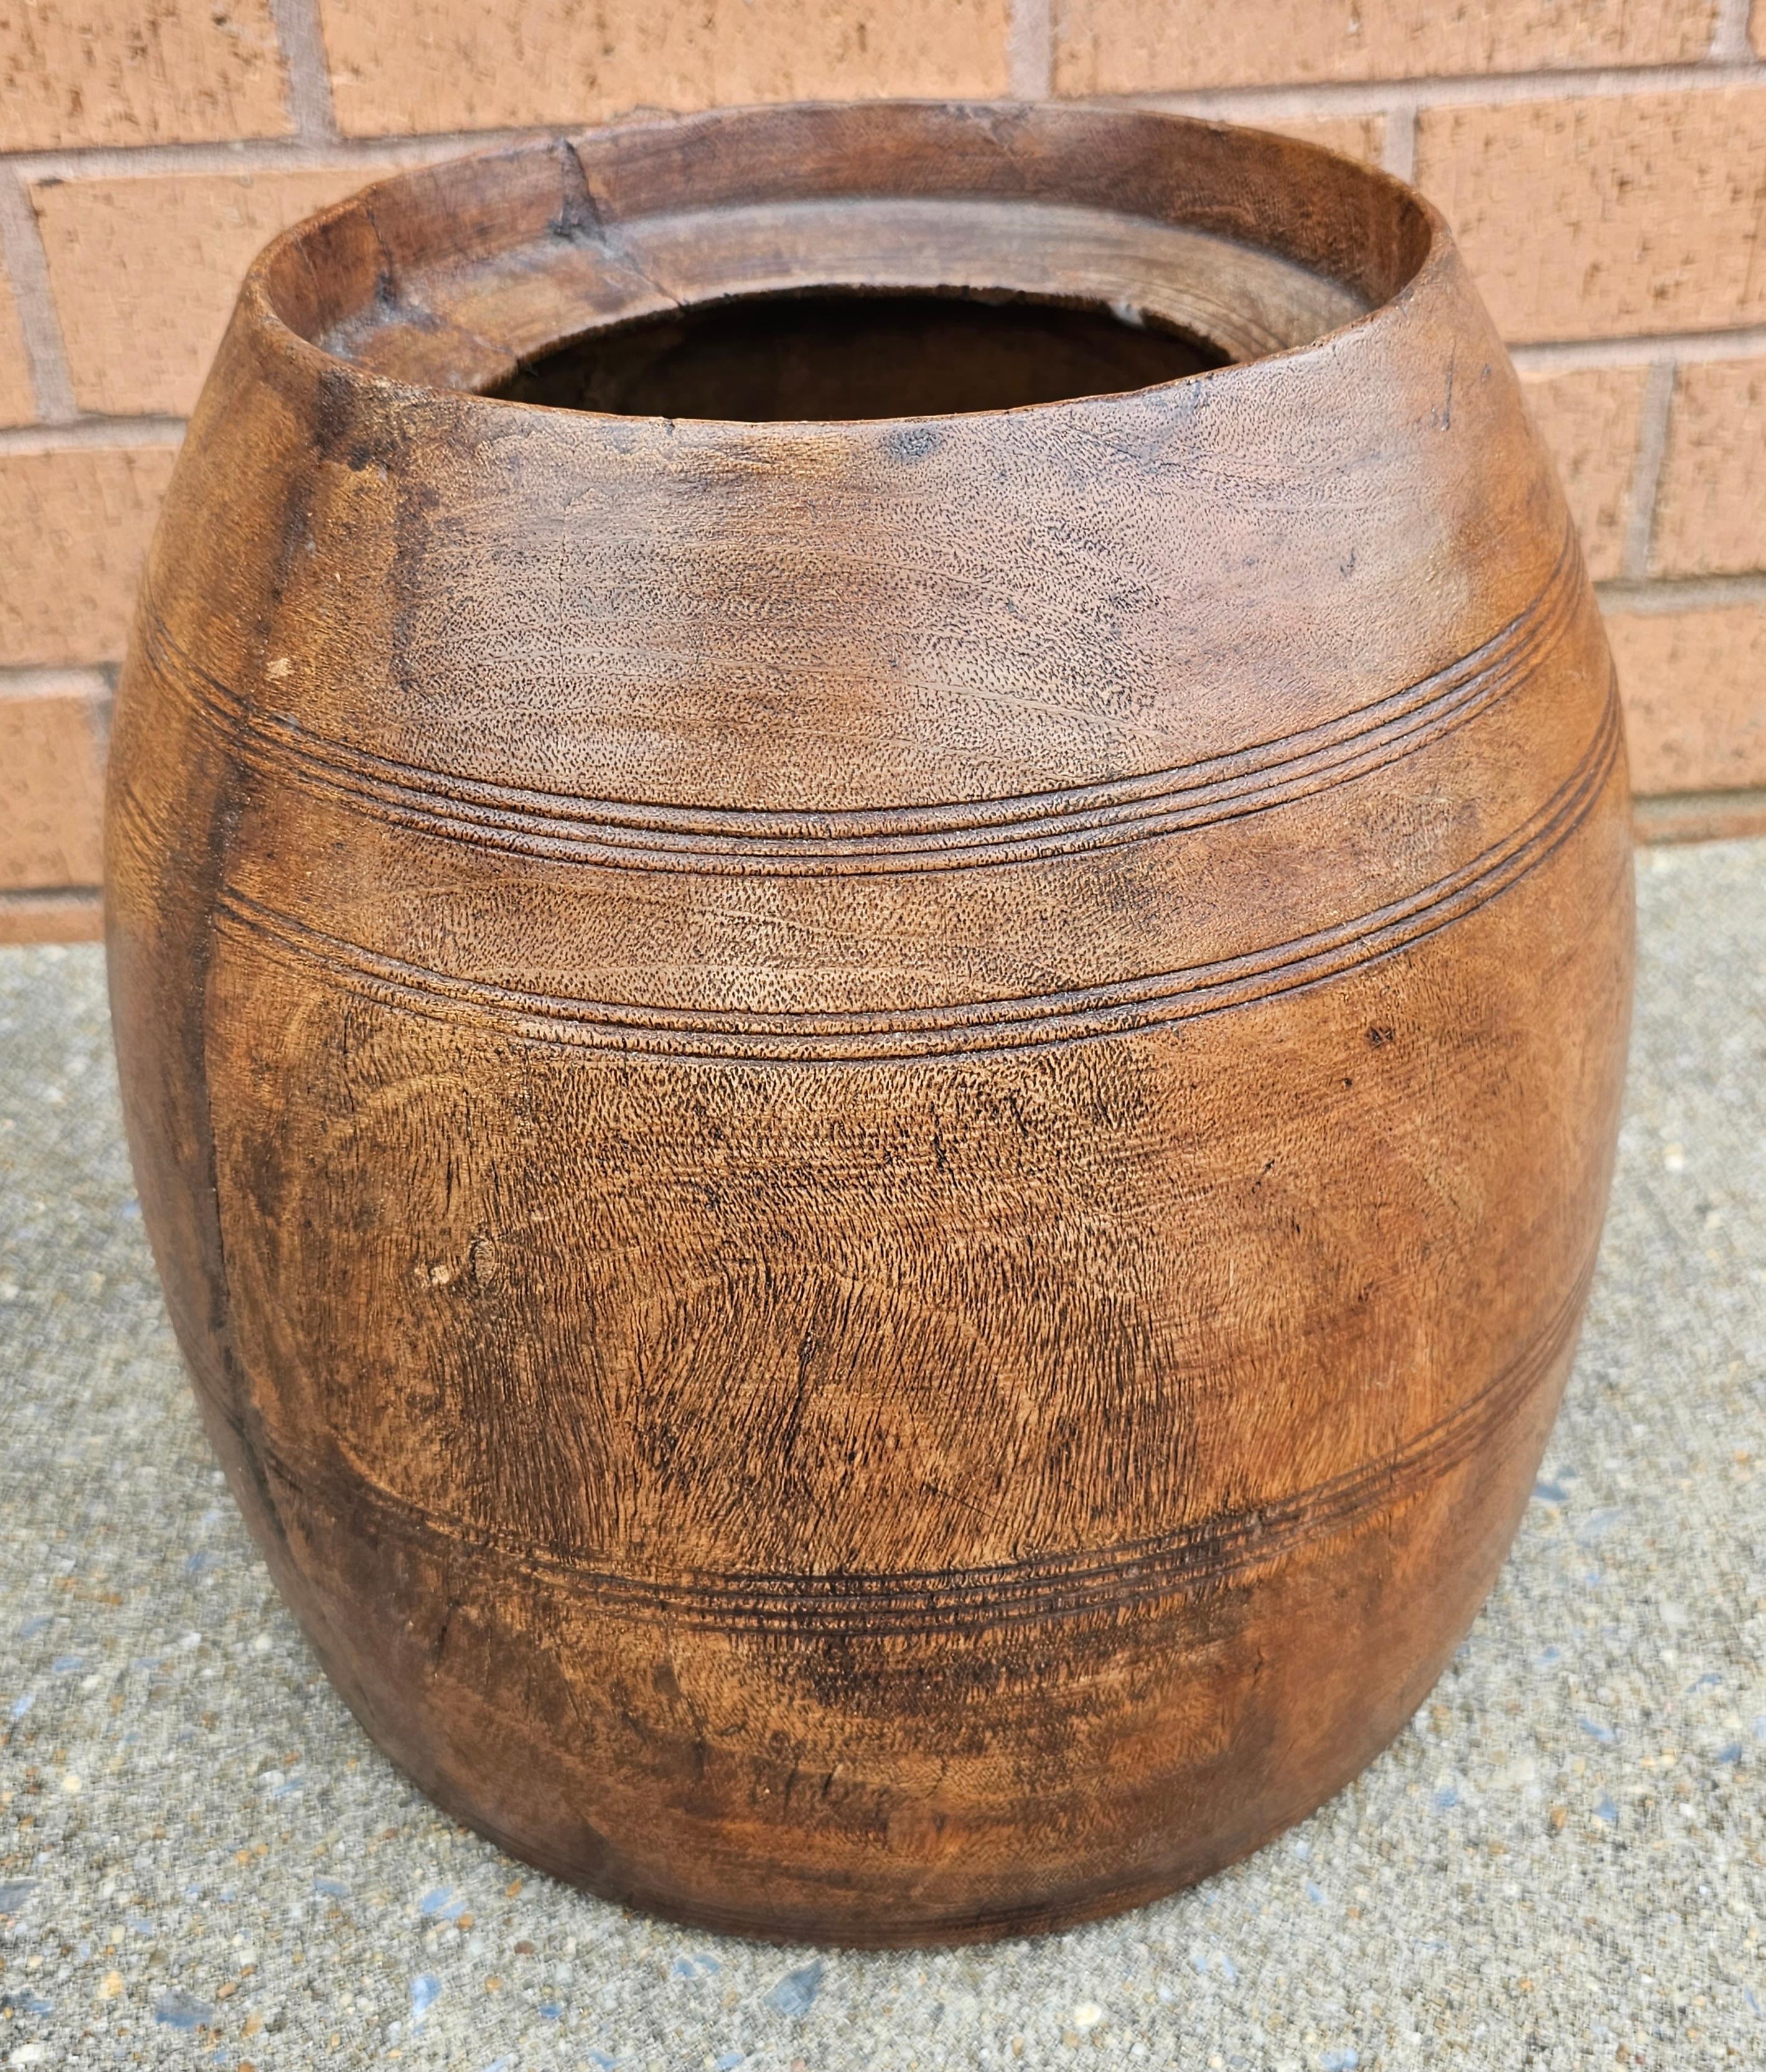 Un pot à miel ou à riz en bois tourné du début du 20e siècle, aujourd'hui utilisé comme jardinière. Une pièce unique pour apporter de l'originalité et de la visibilité à votre plante. Mesure 11